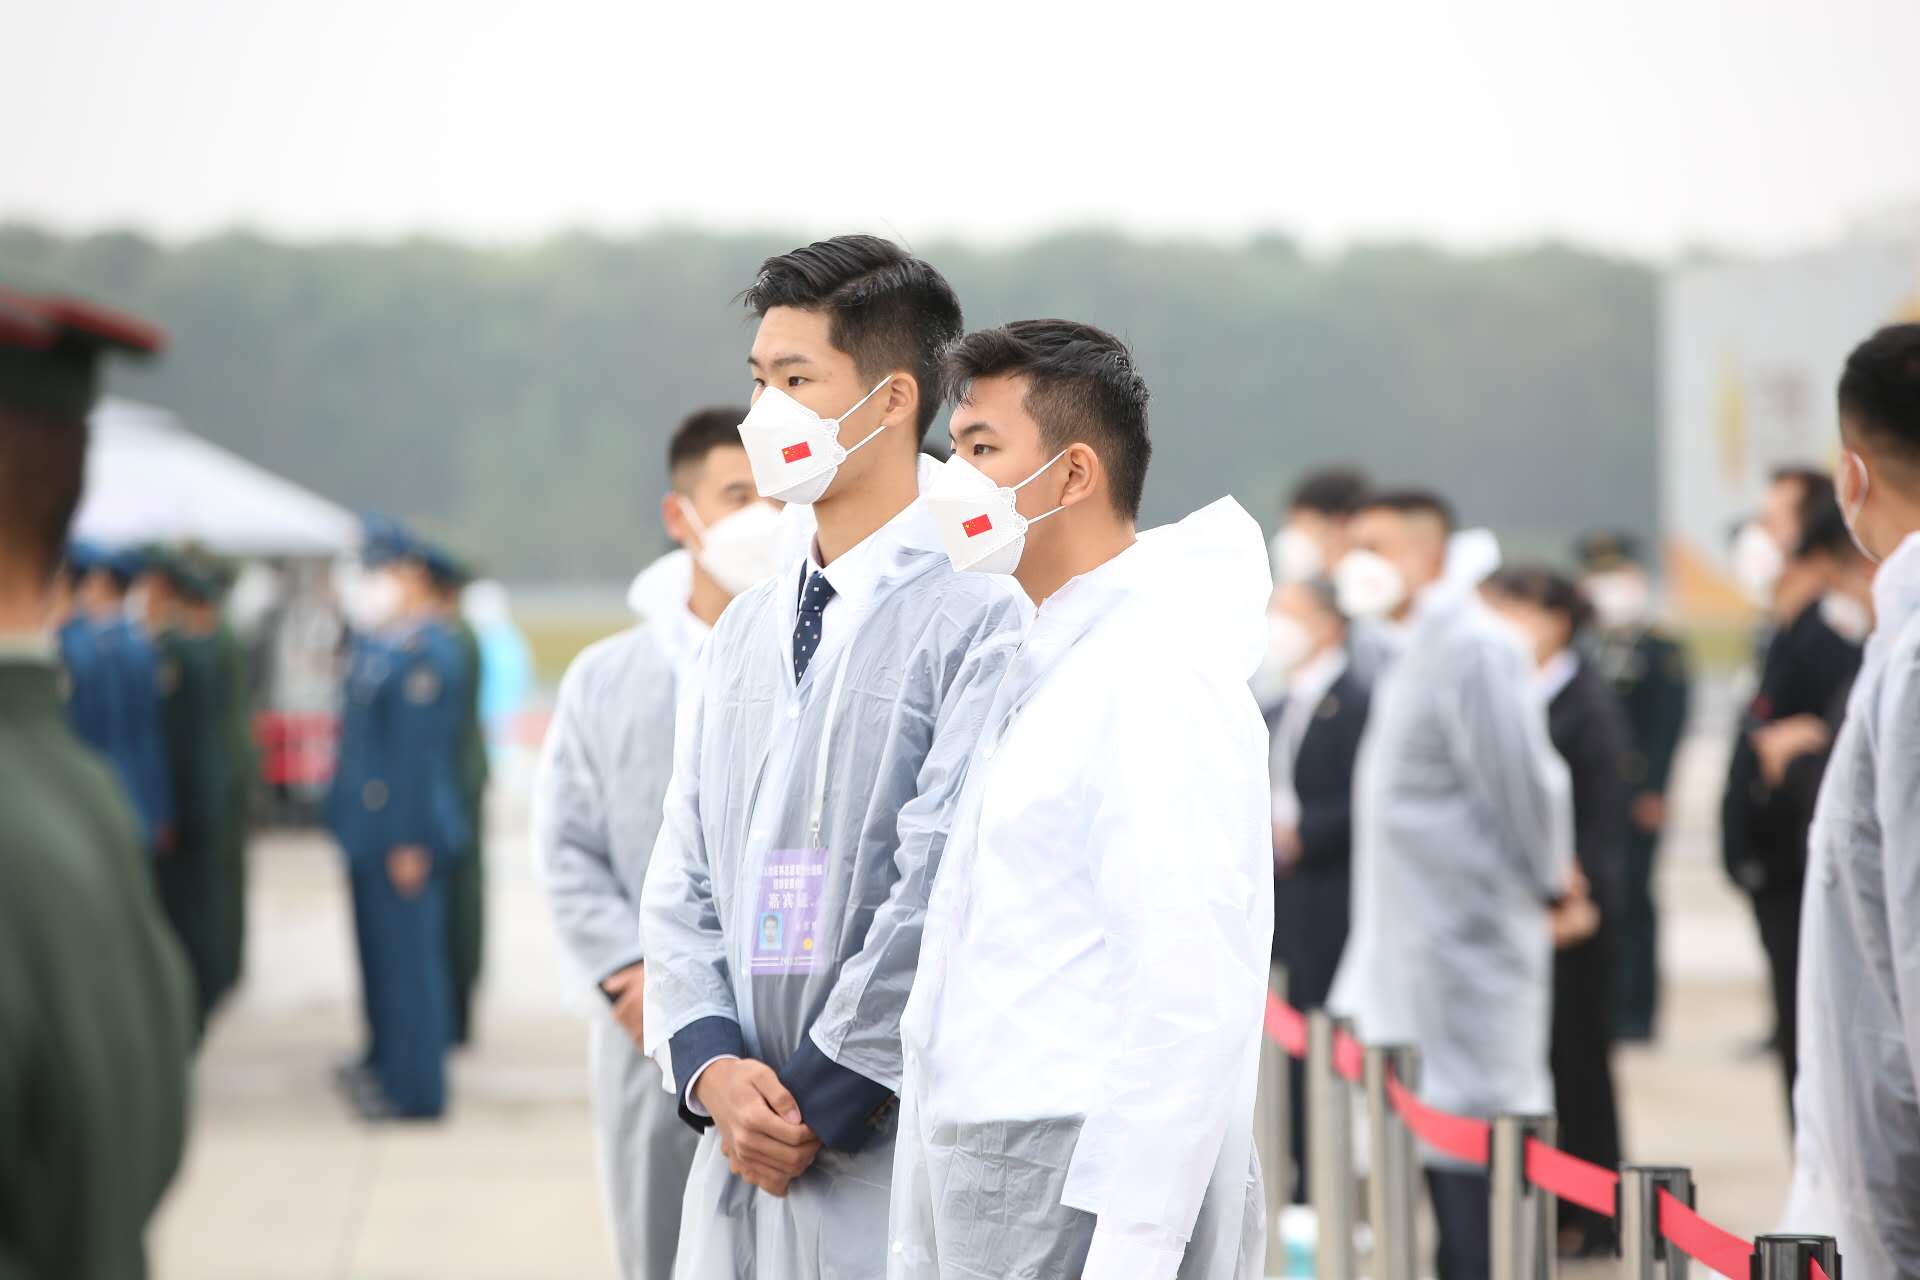 曲木之懿（右）与姜霏梵（左）在沈阳桃仙国际机场，参与志愿军烈士遗骸迎回仪式。